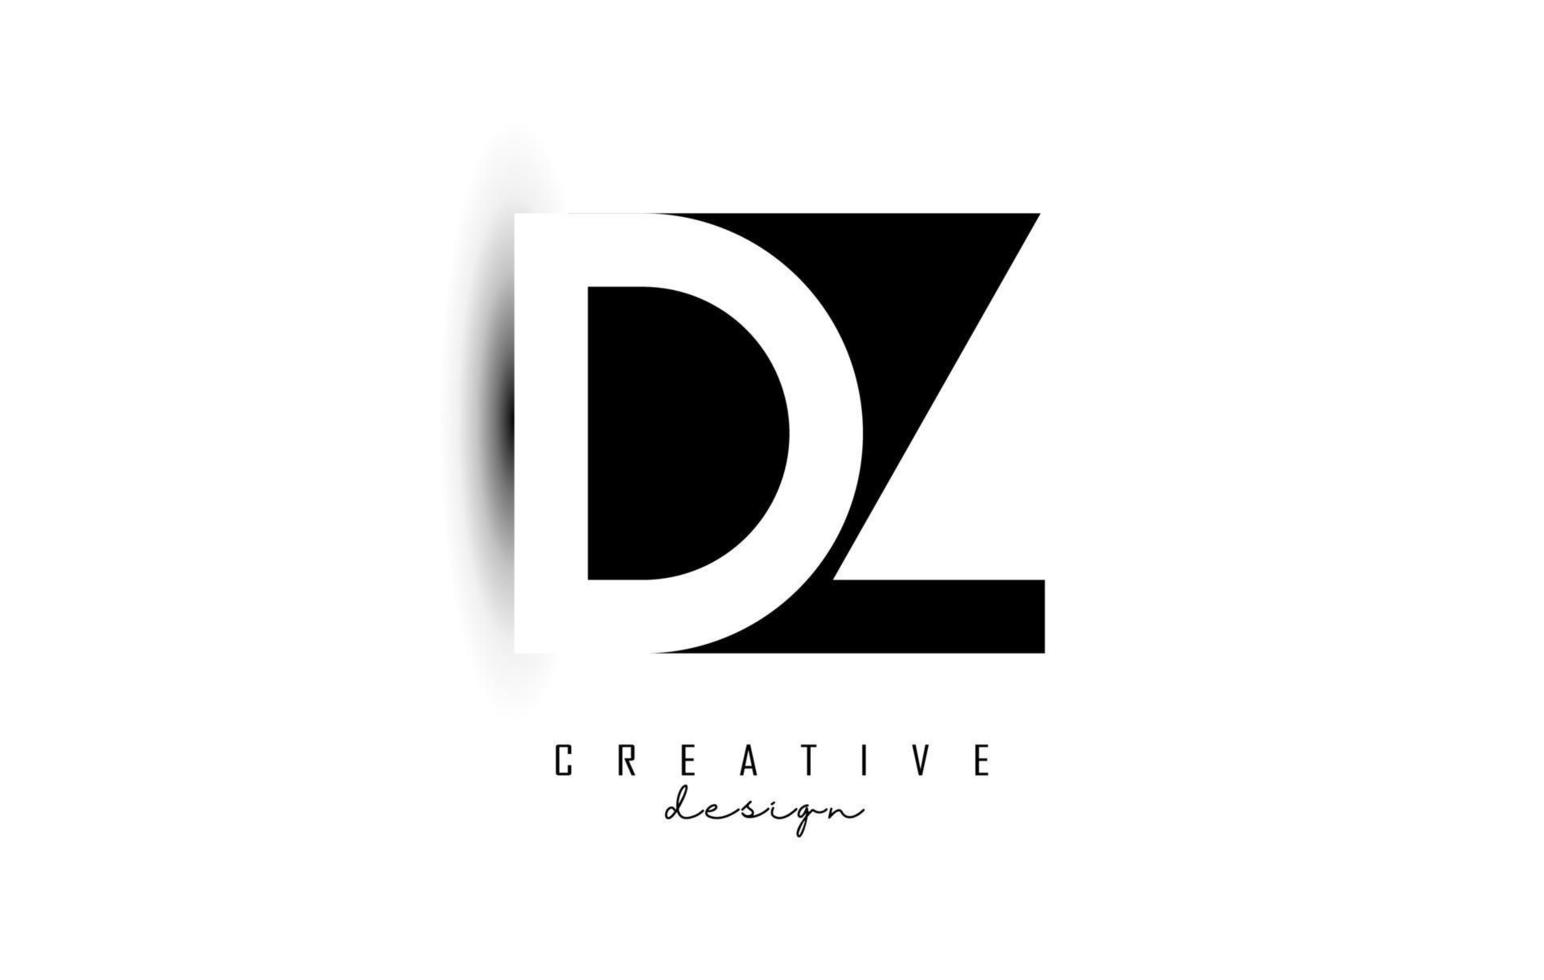 lettere dz logo con design dello spazio negativo in bianco e nero. lettere d e z con tipografia geometrica. vettore